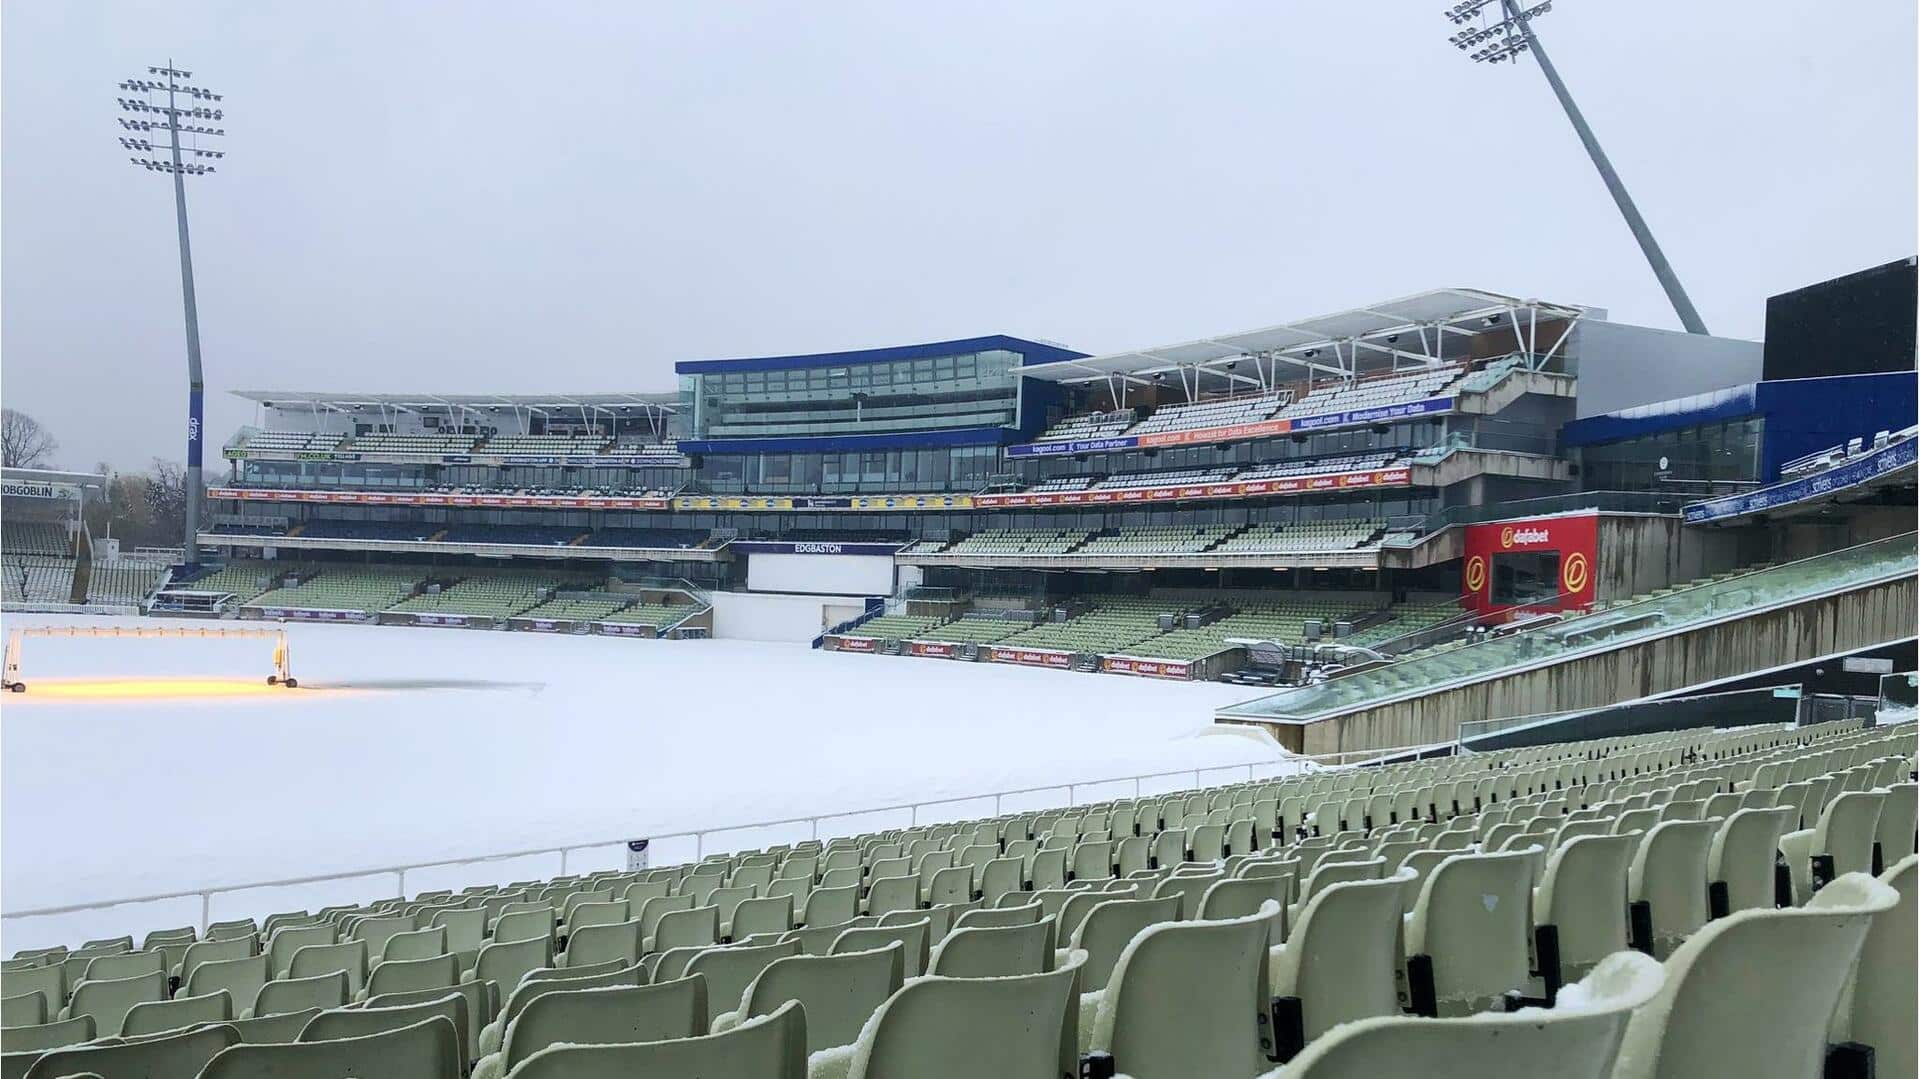 इंग्लैंड के क्रिकेट स्टेडियम में गिरी बर्फ, पिच पर लगाने पड़े हीटर; तस्वीर वायरल